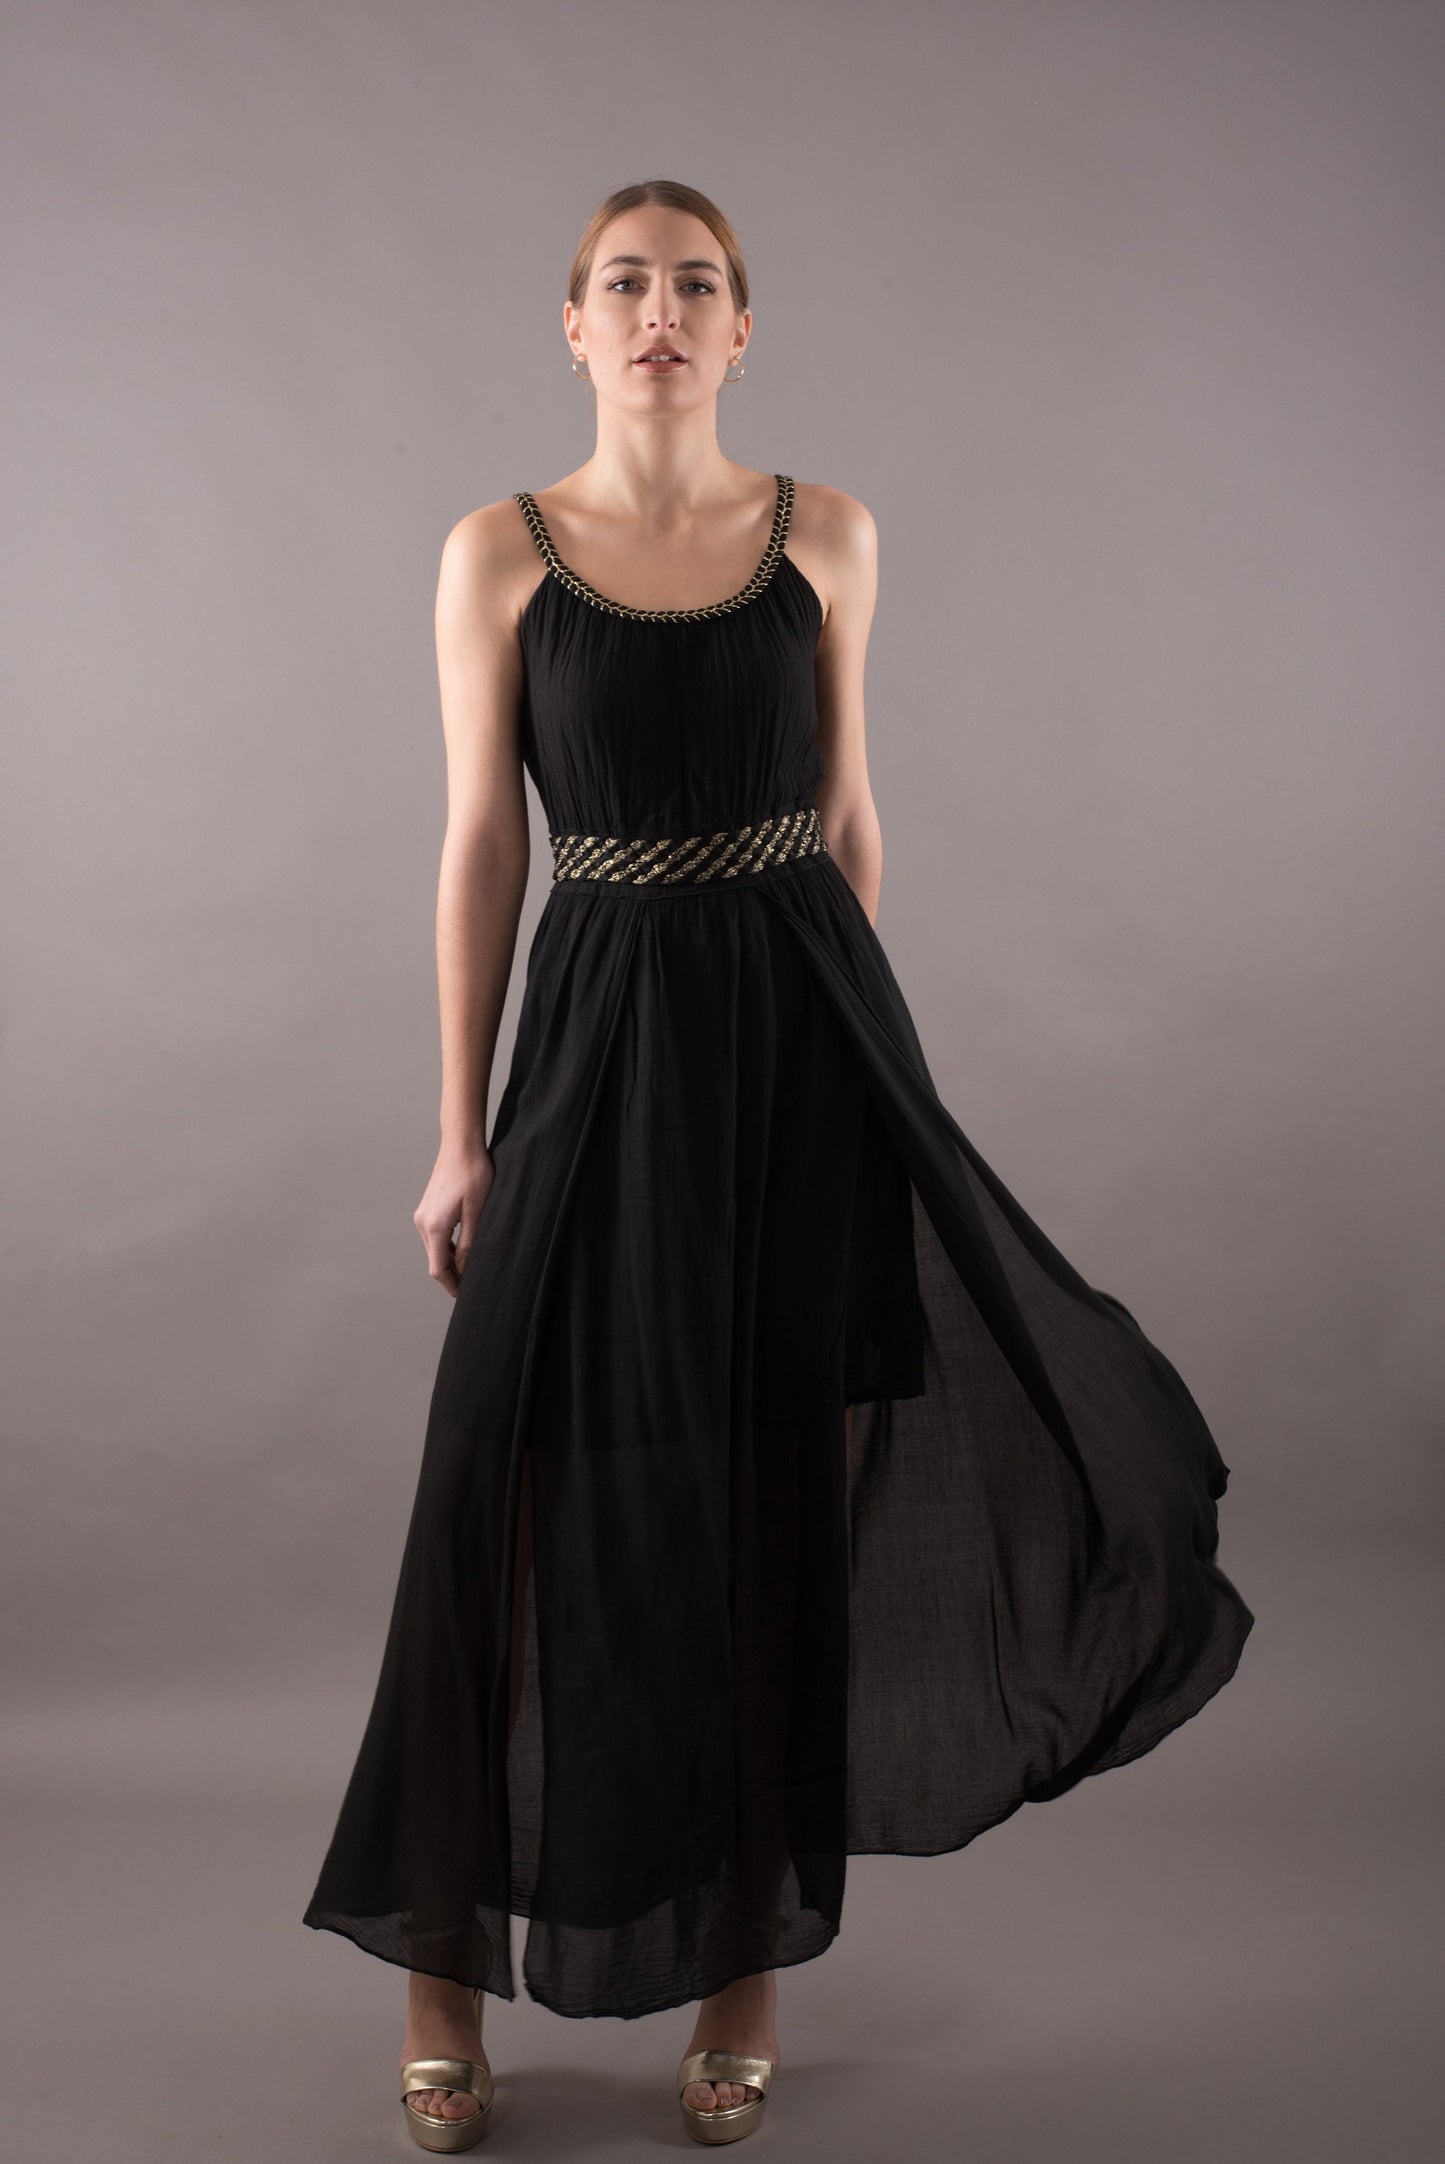 Cotton sundress, long summer maxi dress sleeveless, black evening dress, gold plait details, casual dress